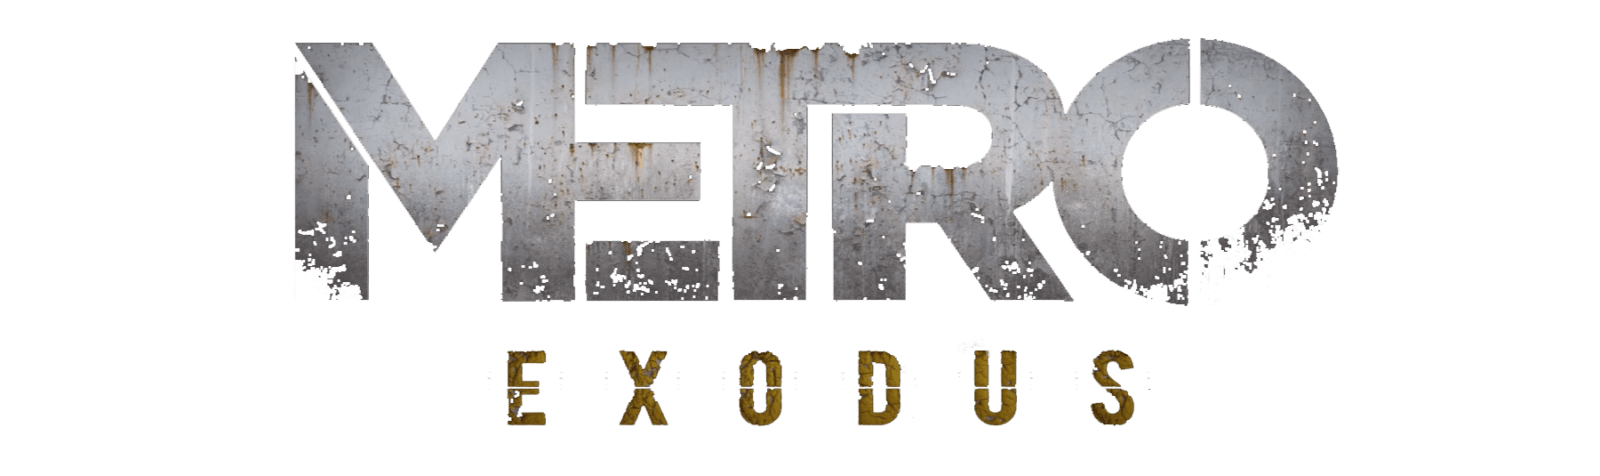 Metro Exodus Logo - Metro: Exodus – Xbox One Controls : MGW: Game Cheats, Cheat Codes ...